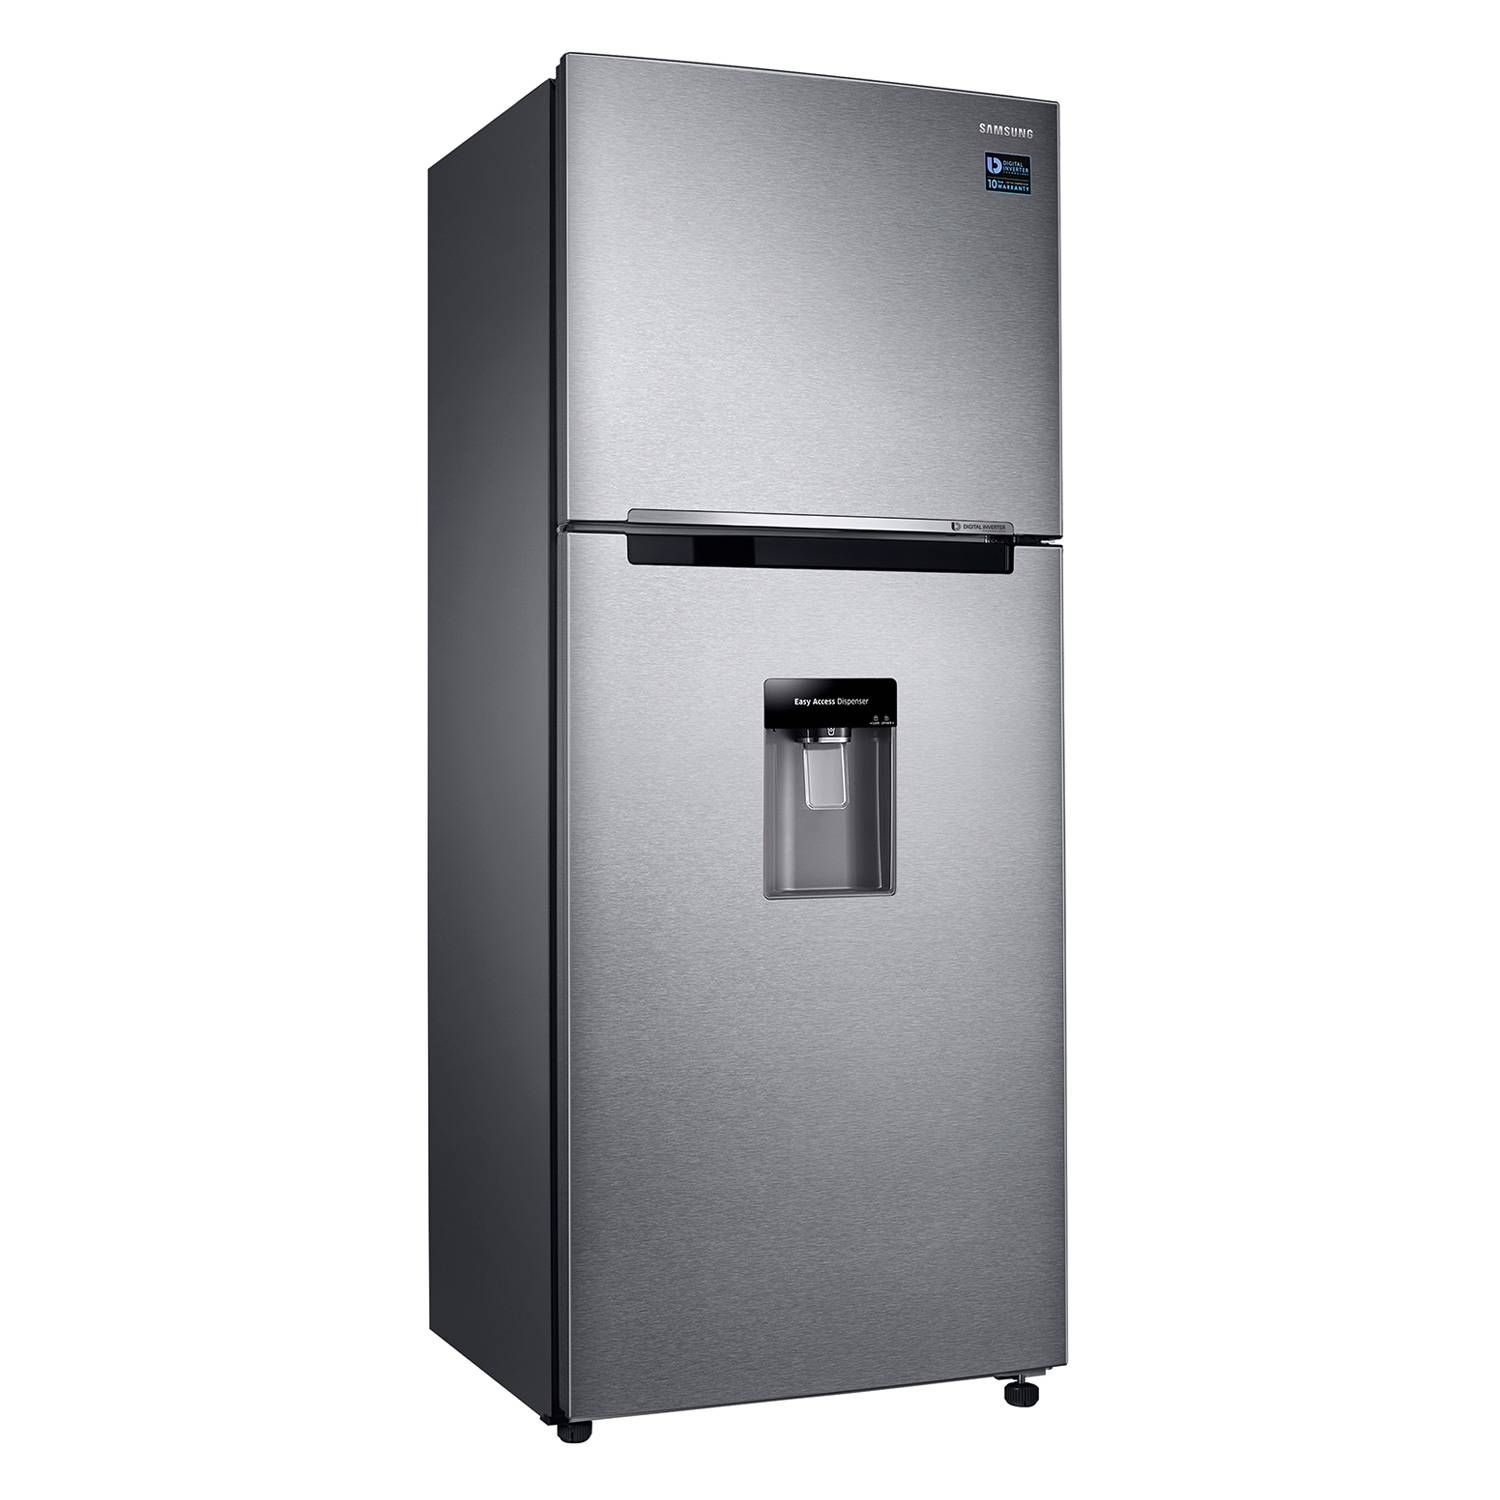 Refrigerador Kenmore 25 pies Dos Puertas Duplex Acero Inoxidable